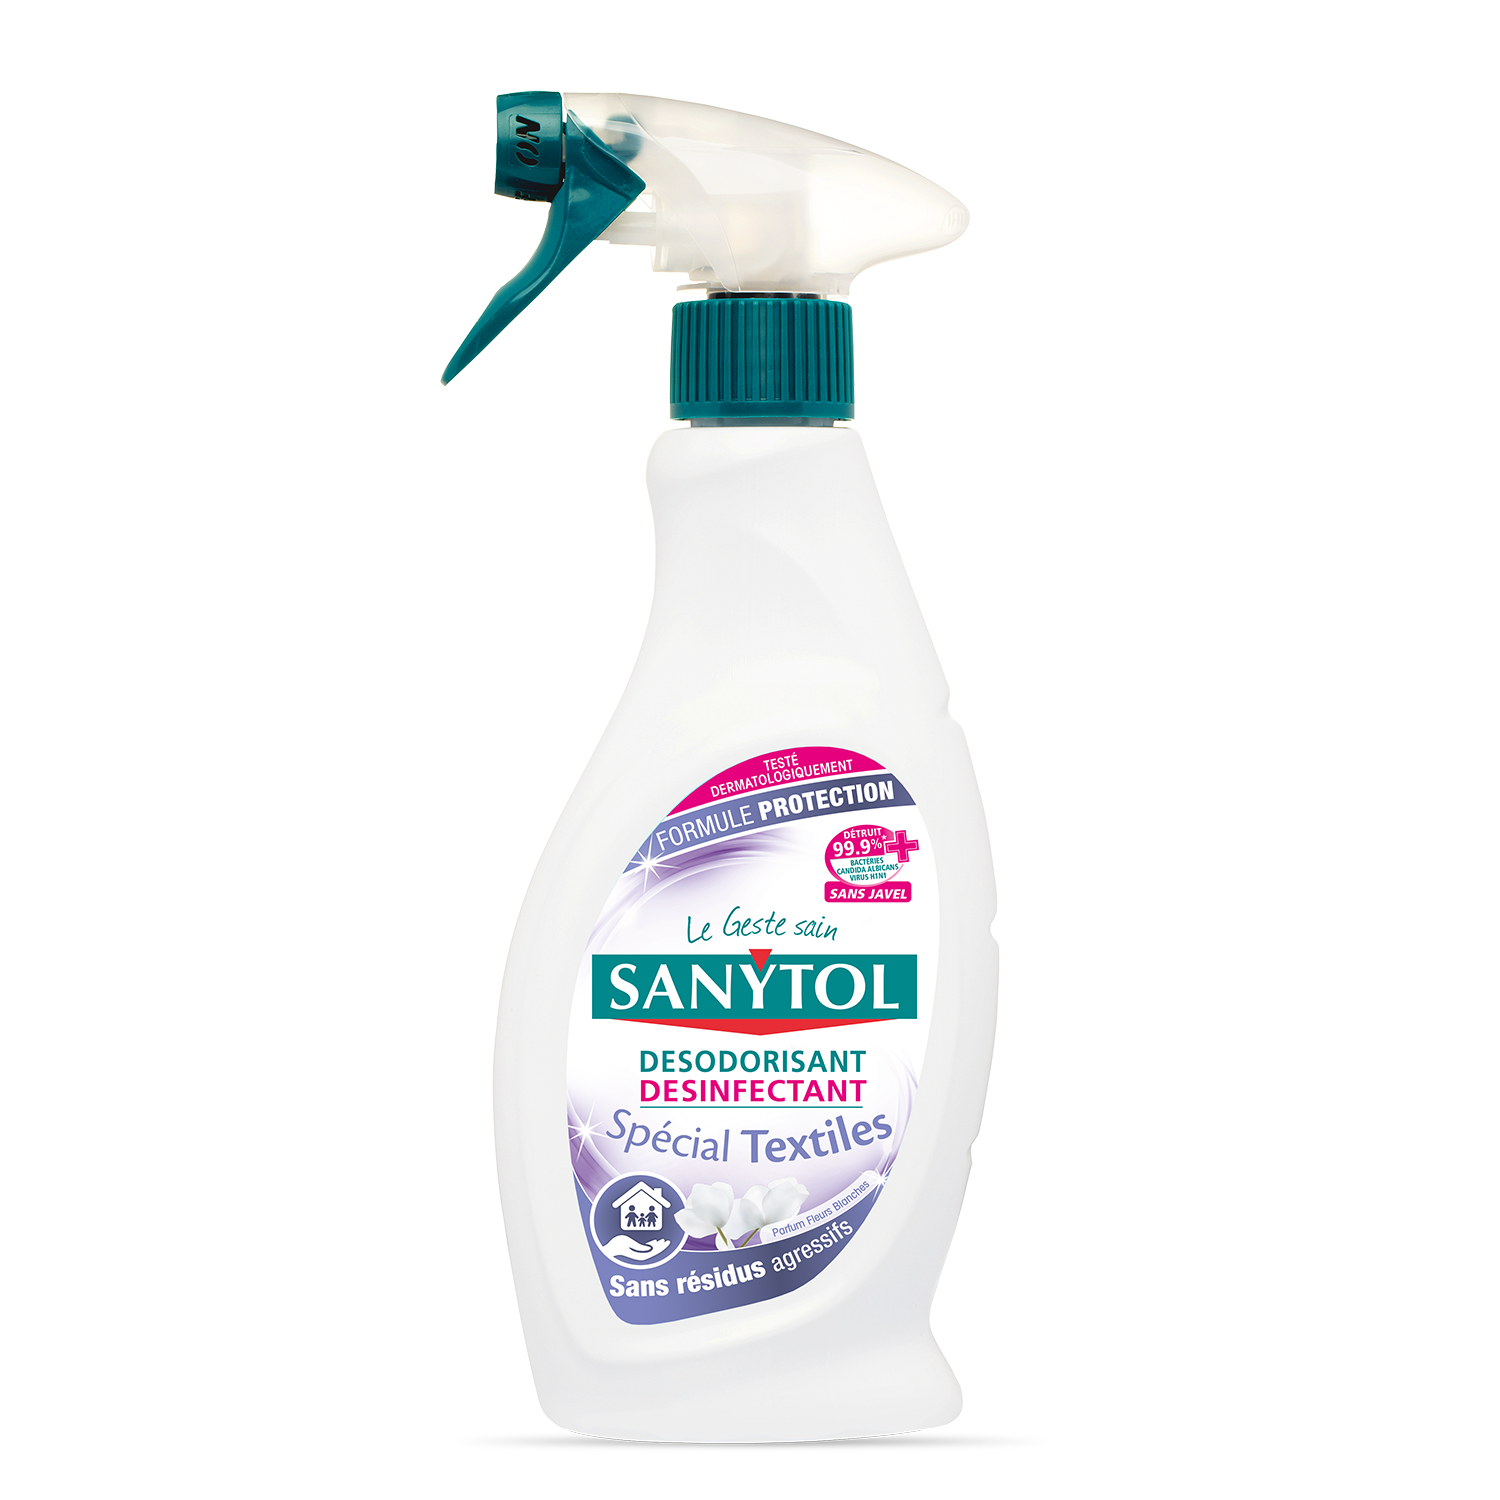 coger un resfriado Intuición Conveniente Textile Disinfectant Deodorizer - Special Textiles - Sanytol